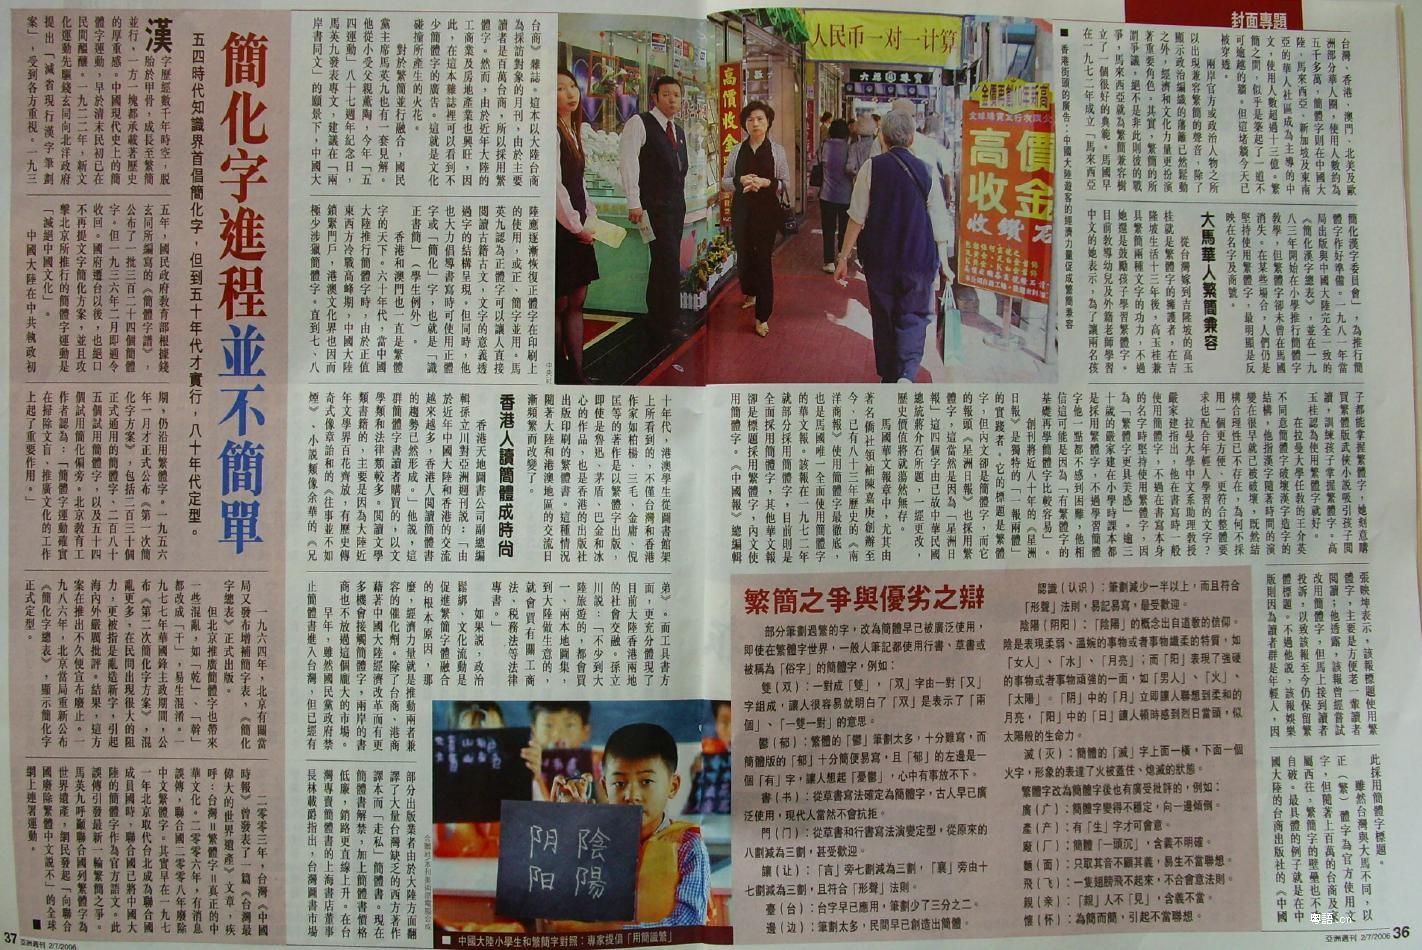 [轉貼] 亞洲週刊 7 月 報導 繁體字在中國、簡體在台灣、及繁簡在大馬互用的情況